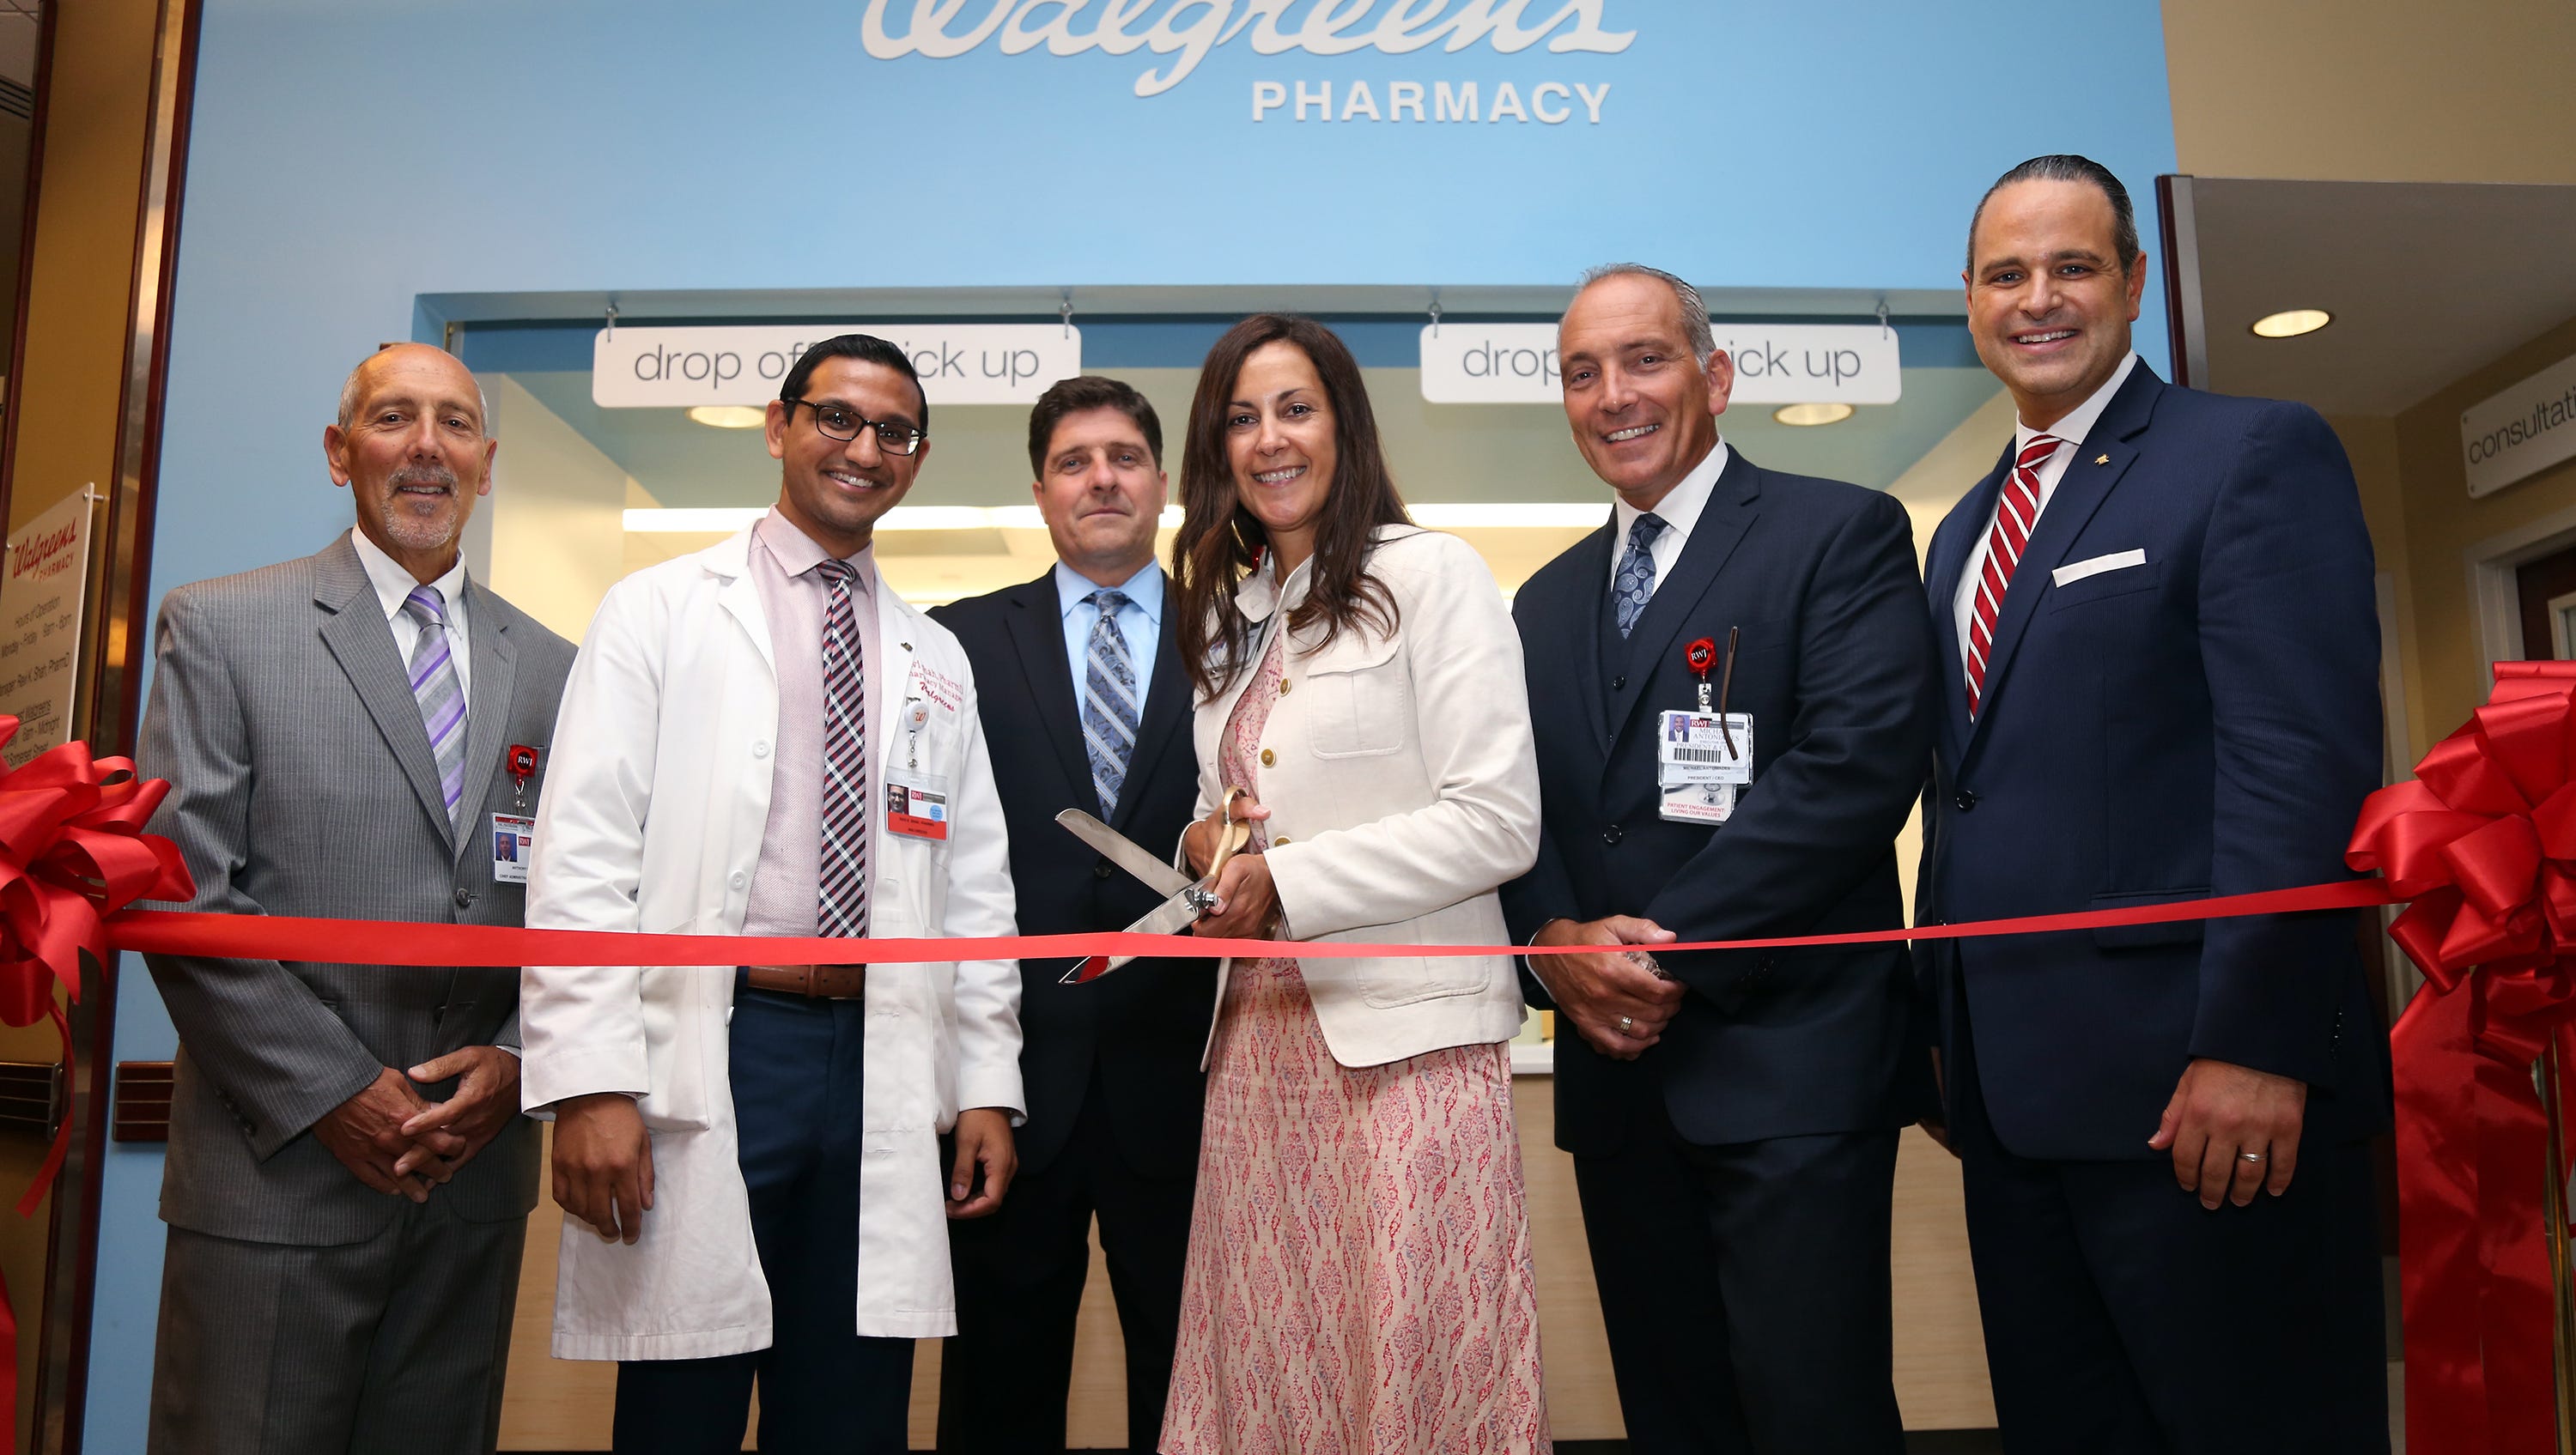 Heartbeats: Walgreens pharmacy opens at hospital